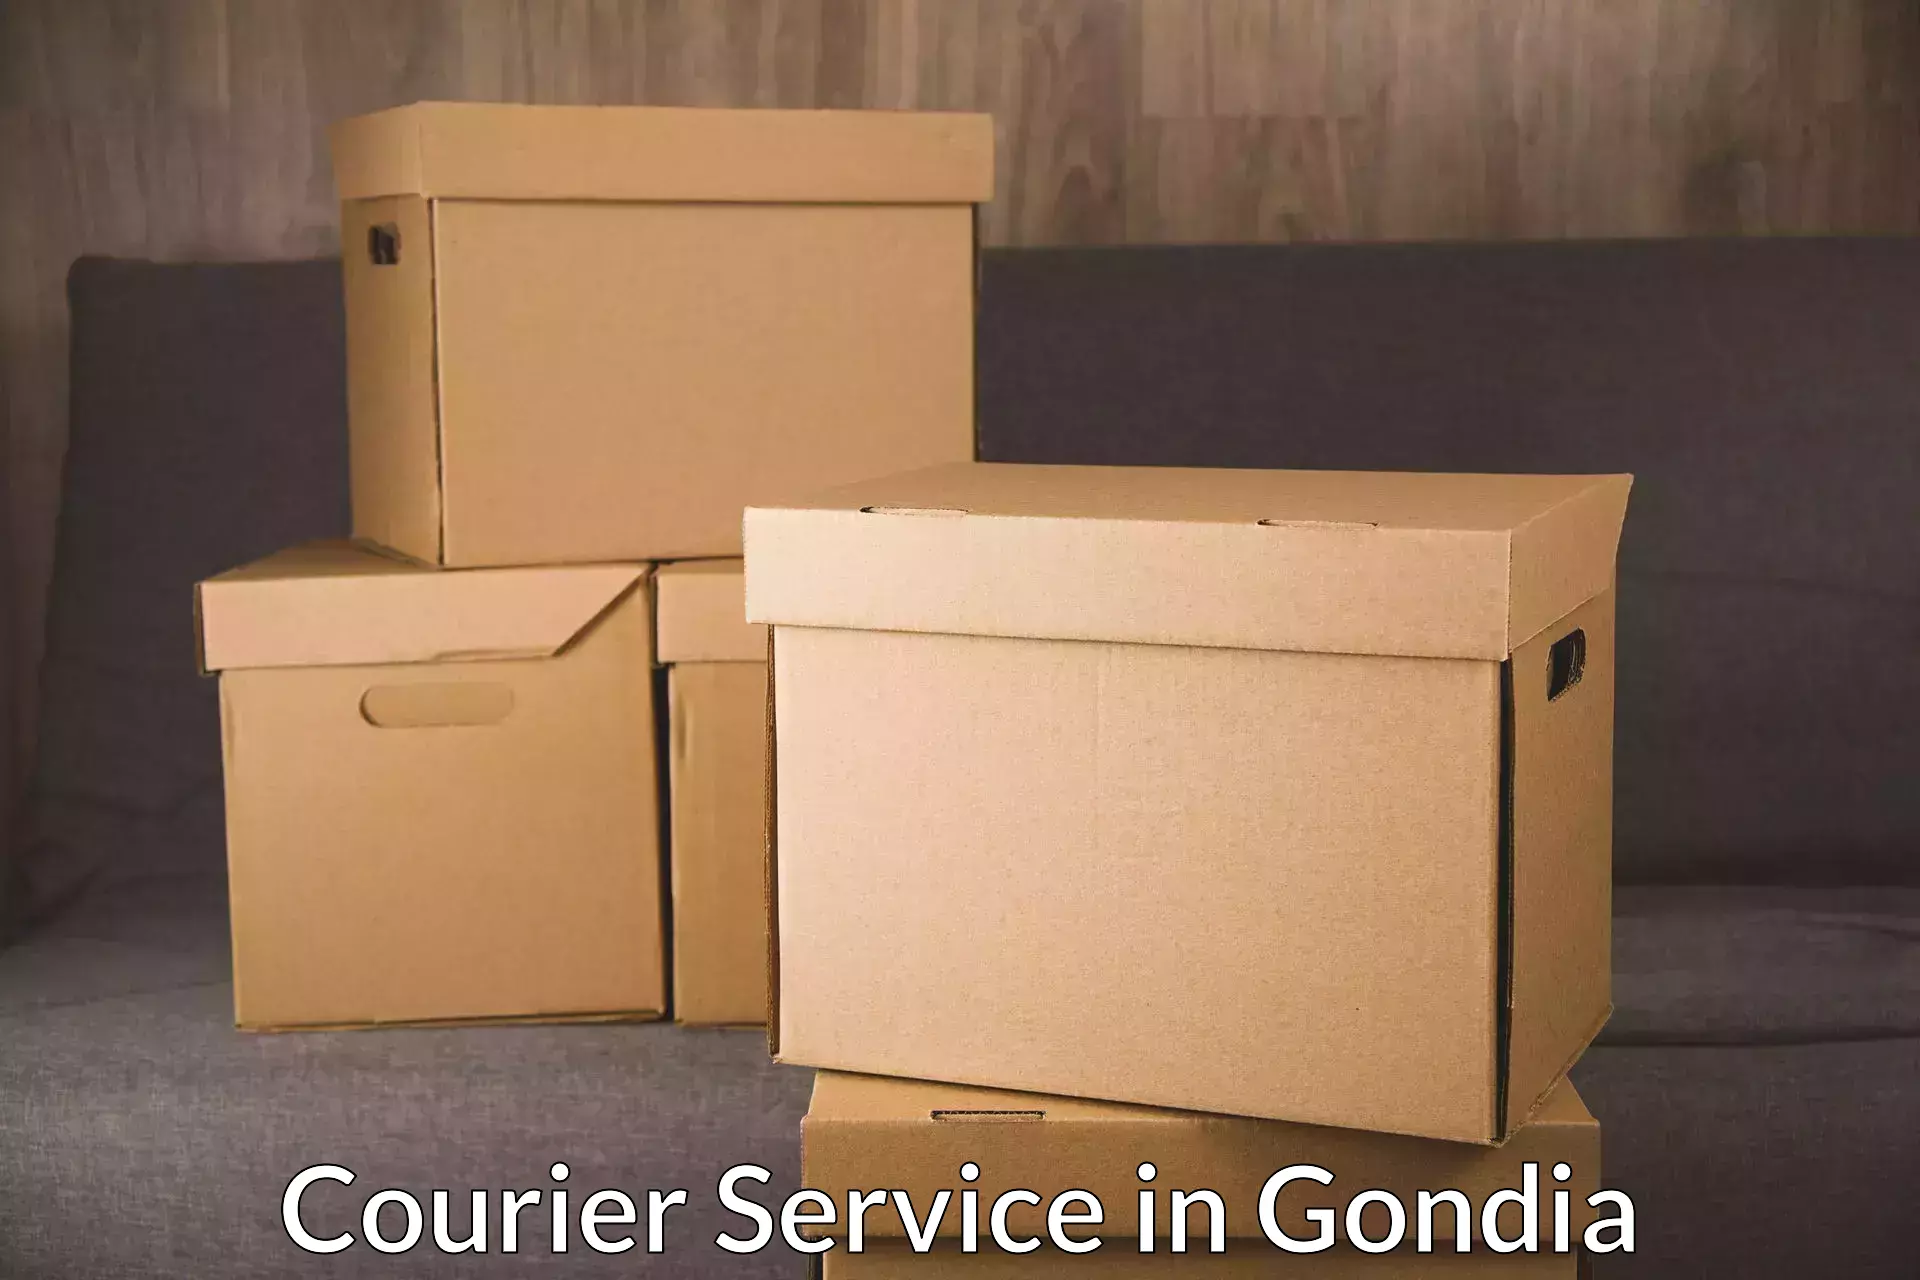 Remote area delivery in Gondia